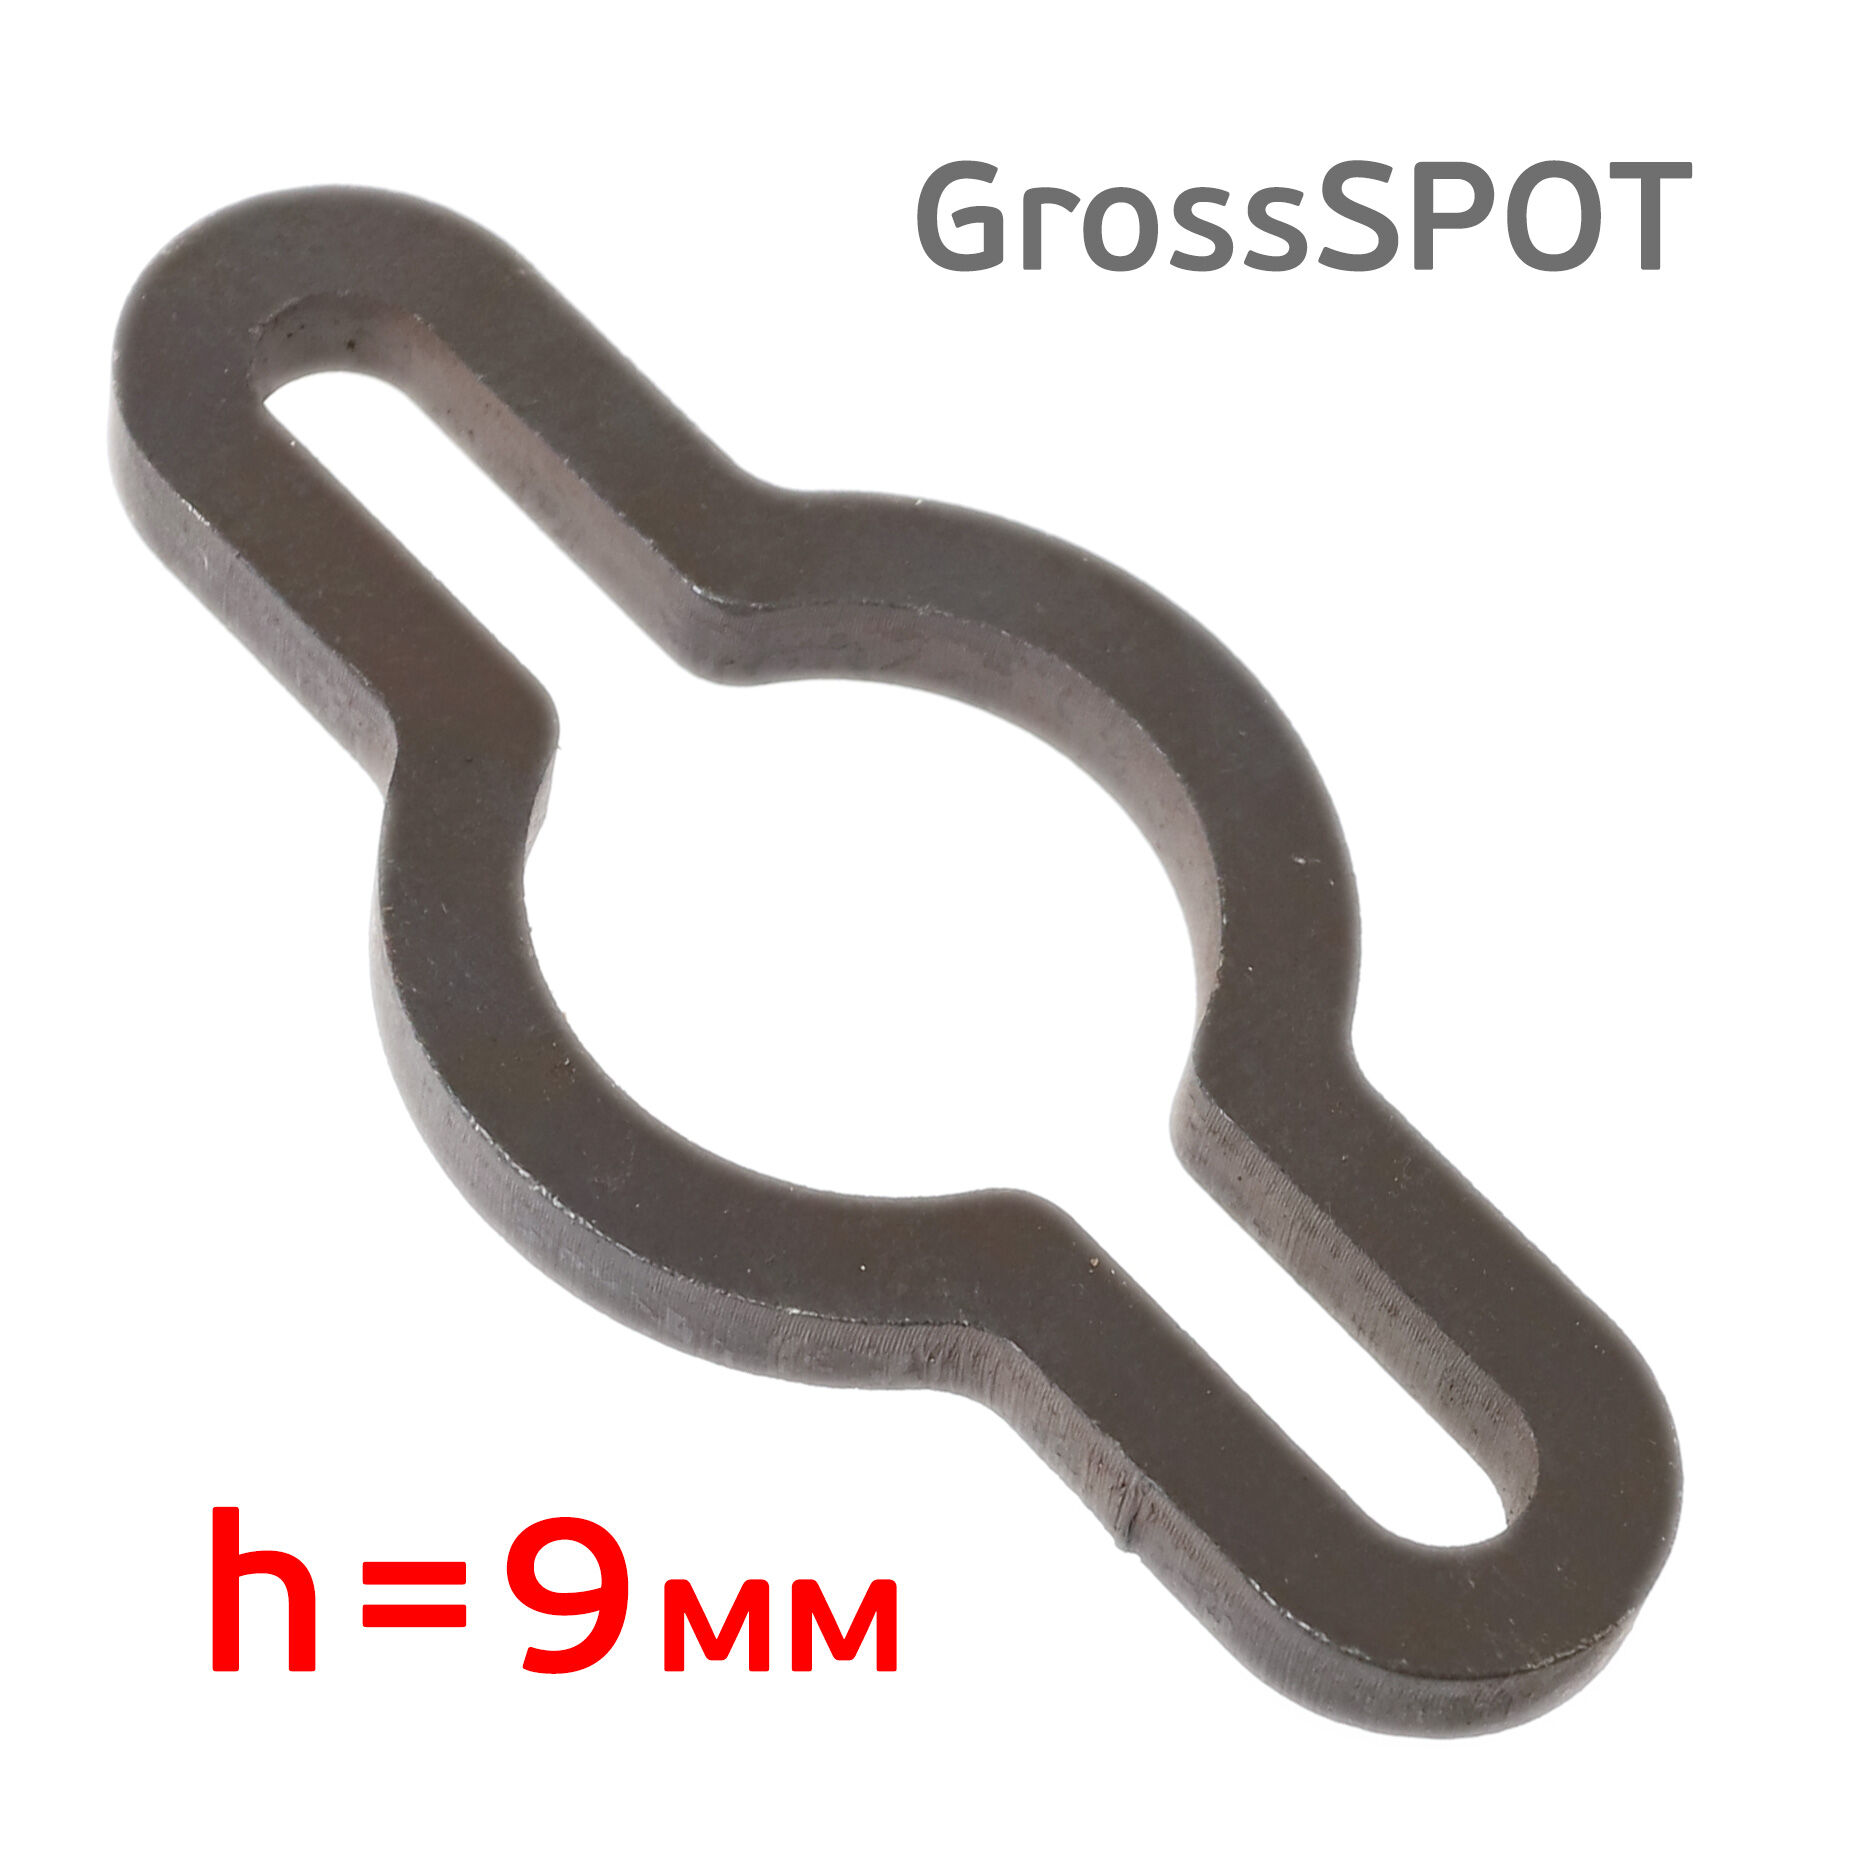 Соединитель цепей GrossSPOT приспособление для укорачивания цепи (замок)